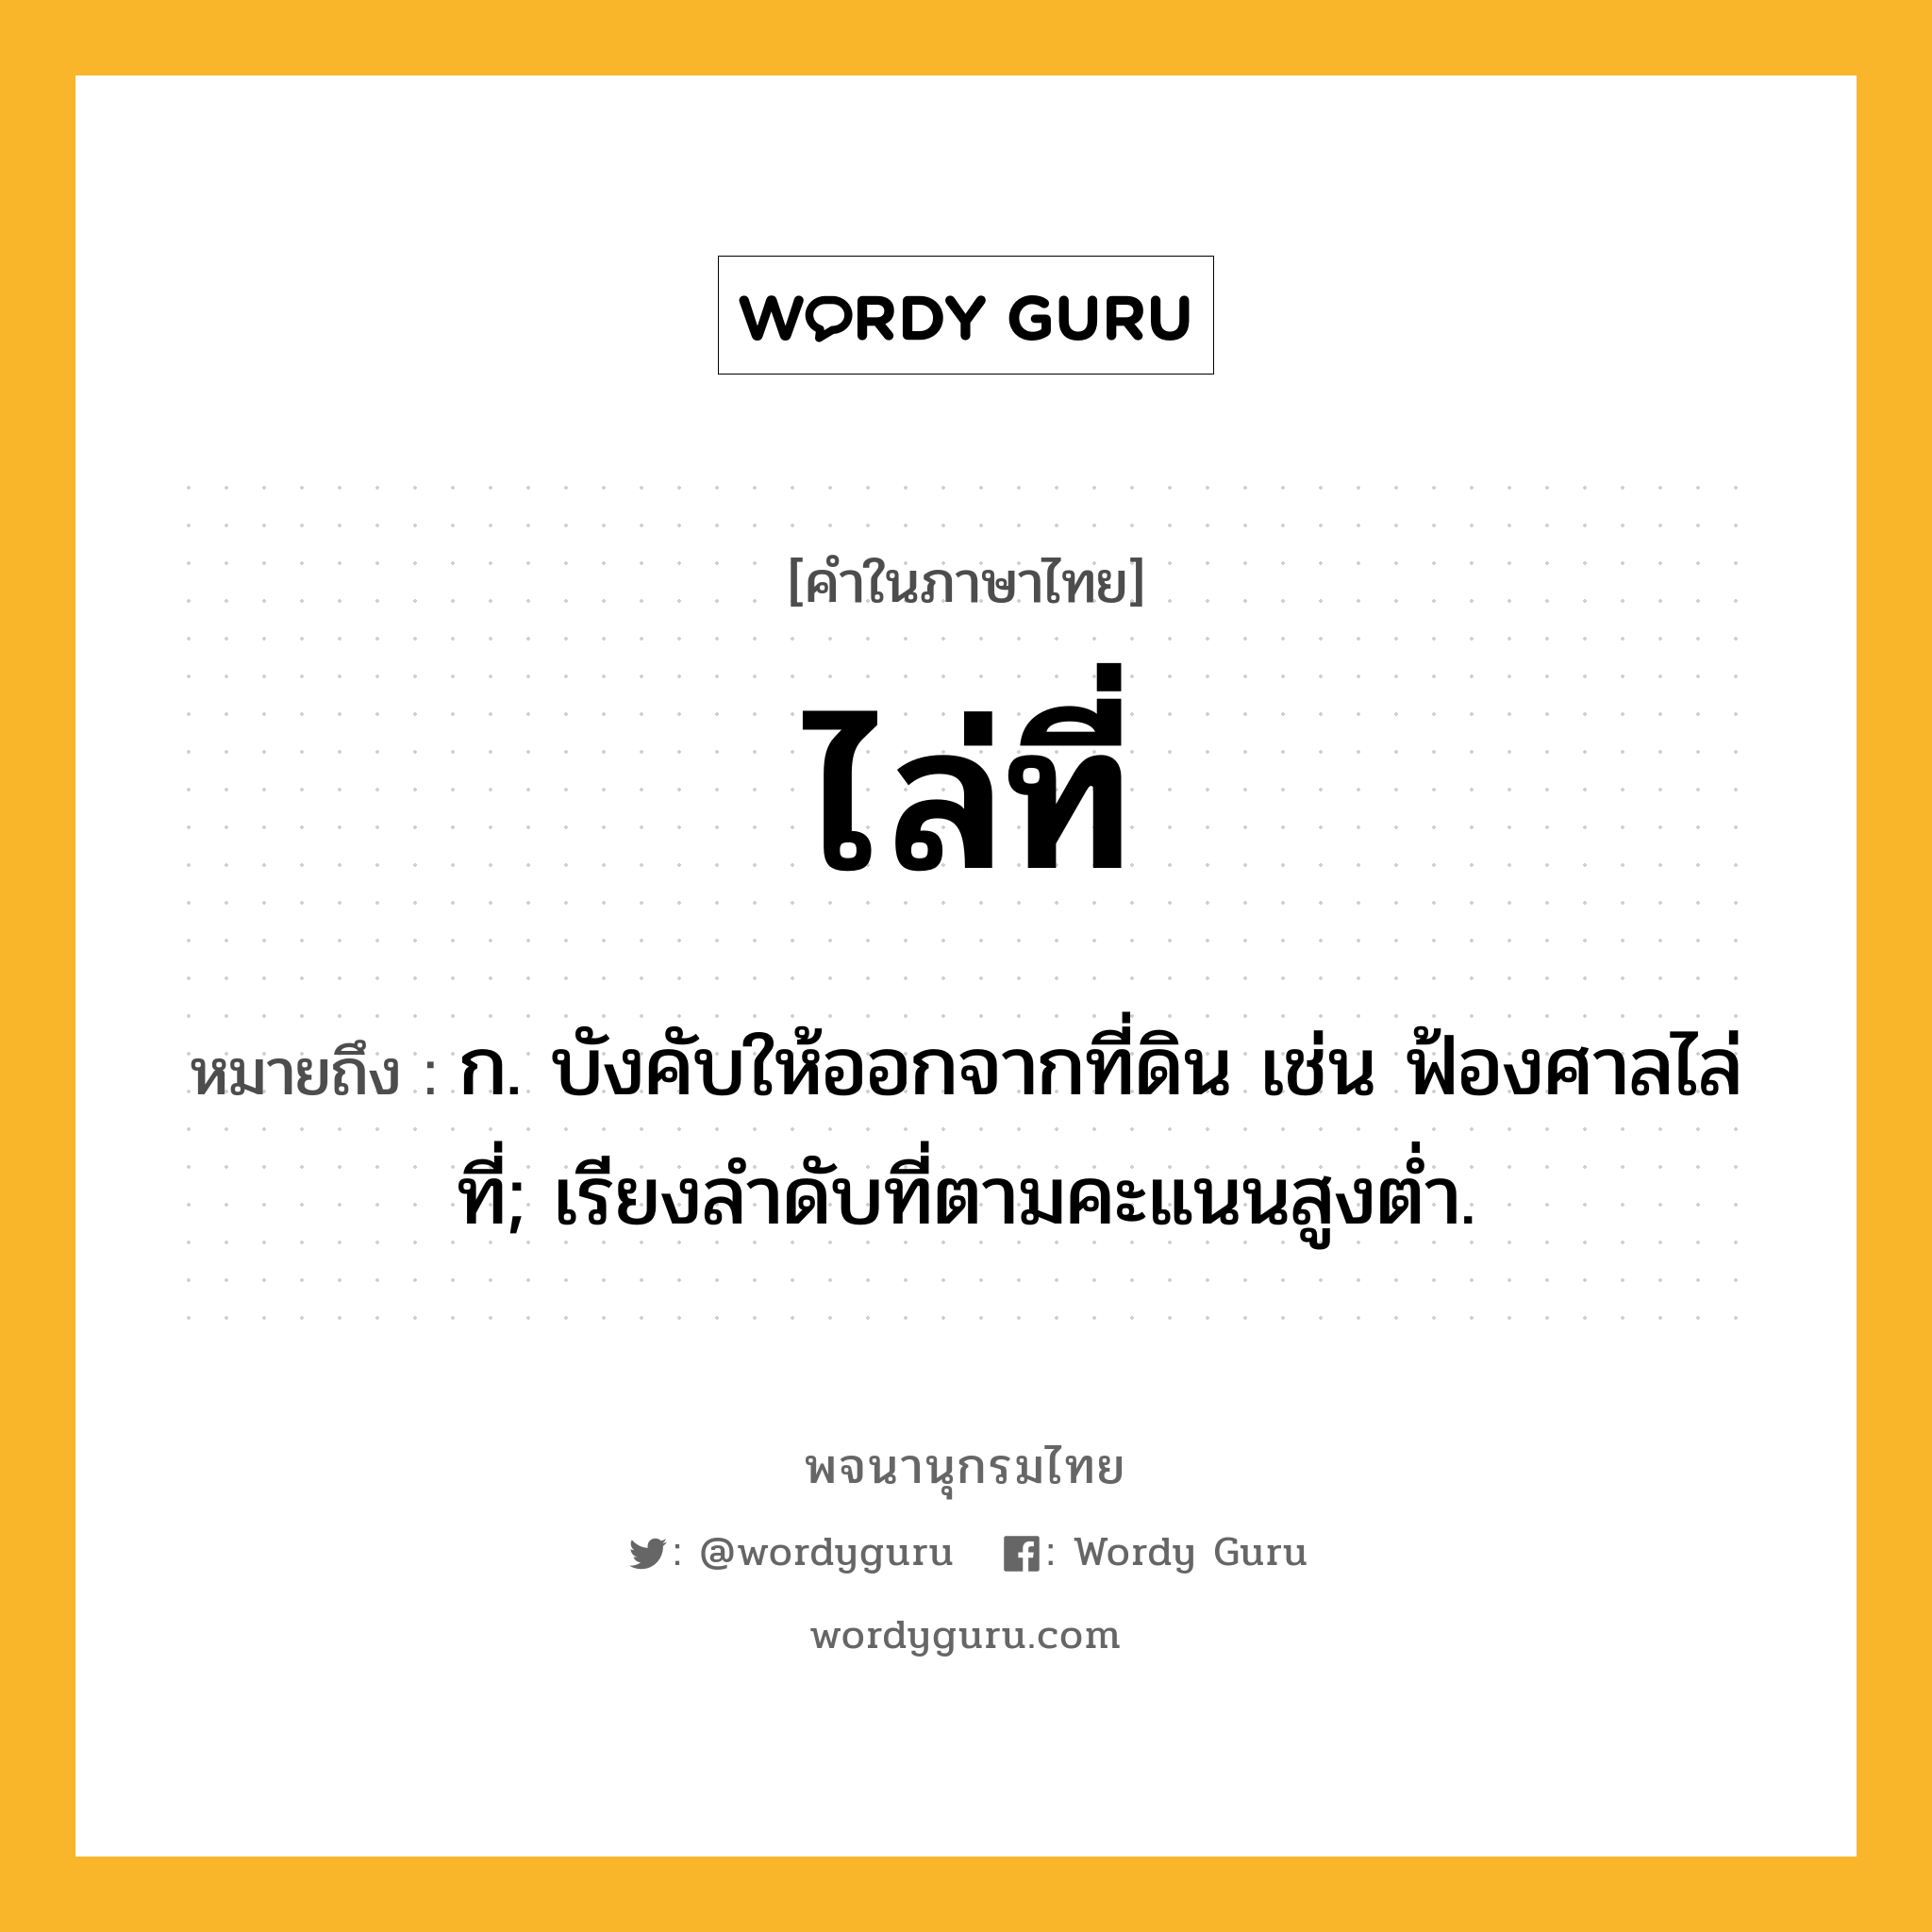 ไล่ที่ หมายถึงอะไร?, คำในภาษาไทย ไล่ที่ หมายถึง ก. บังคับให้ออกจากที่ดิน เช่น ฟ้องศาลไล่ที่; เรียงลำดับที่ตามคะแนนสูงต่ำ.